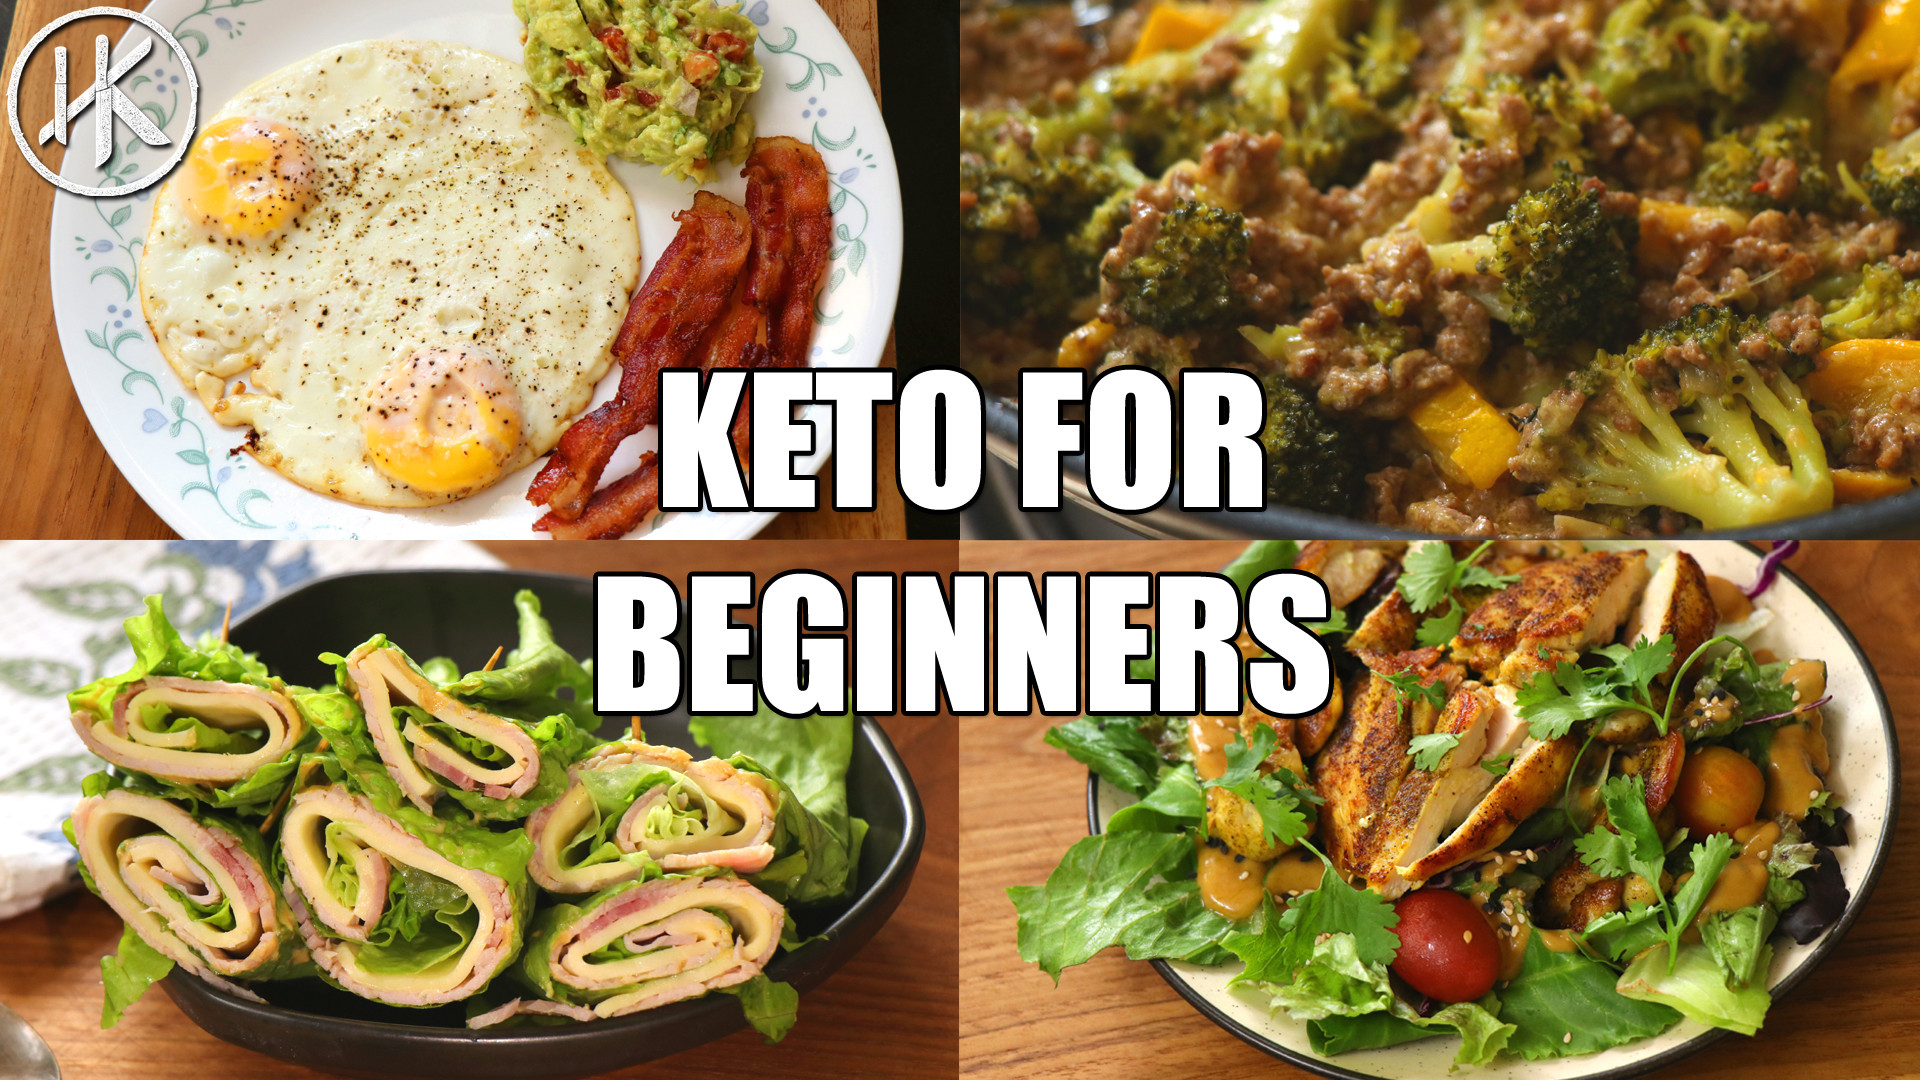 Keto Diet Recipes For Beginners
 Keto for Beginners Free Keto Meal Plan Headbanger s